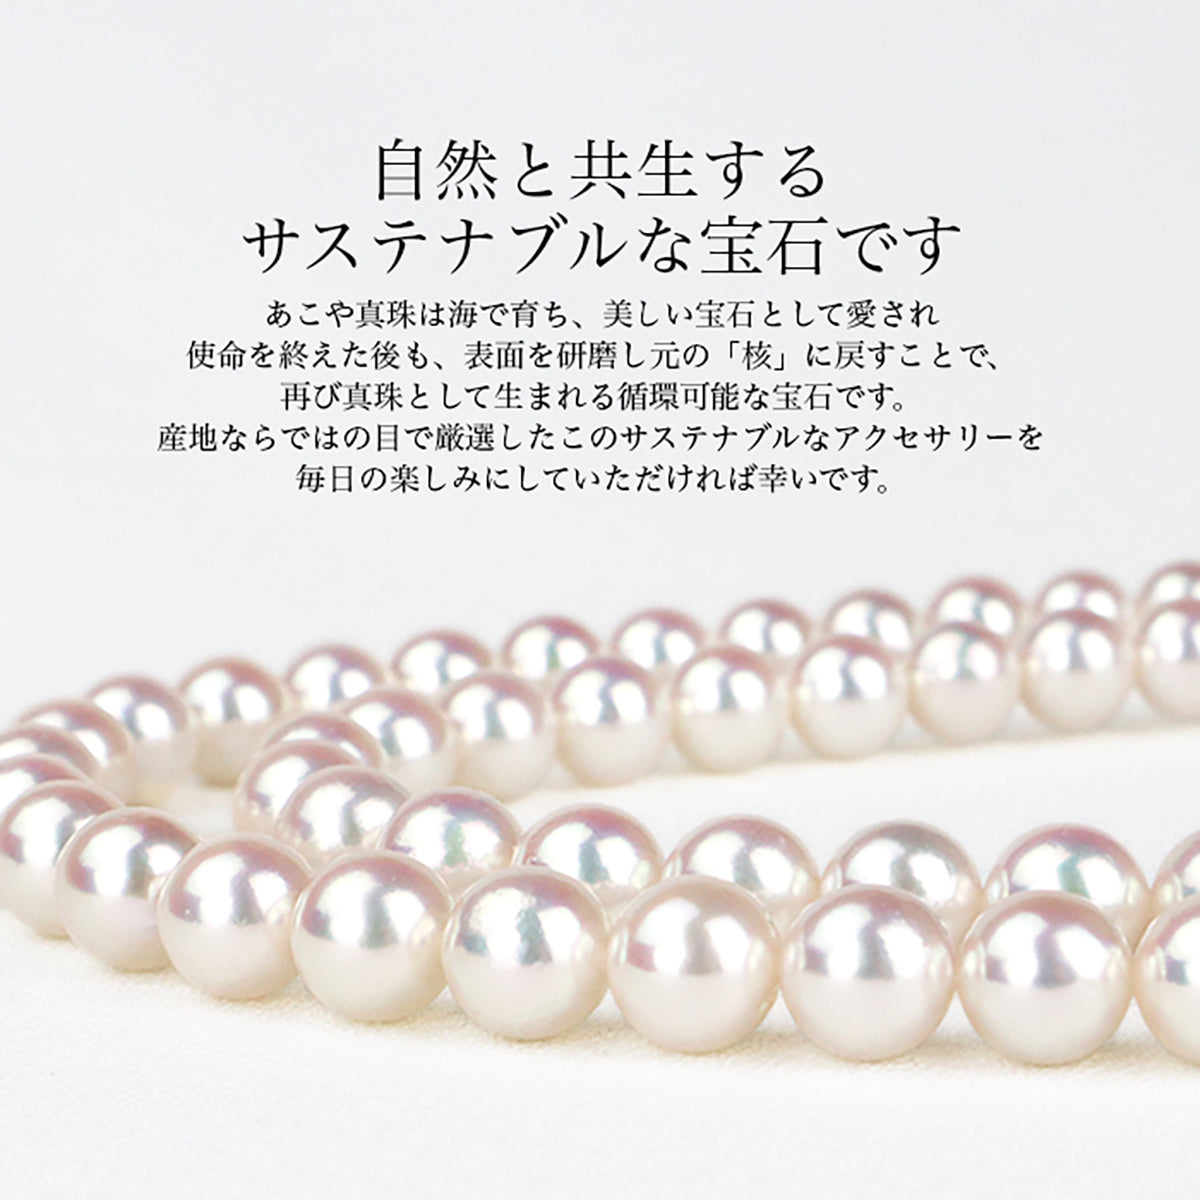 Pearl swing earrings / earrings for women [3 types] Titanium/SV925/brass [6.5-7.0mm] Akoya pearl dangling